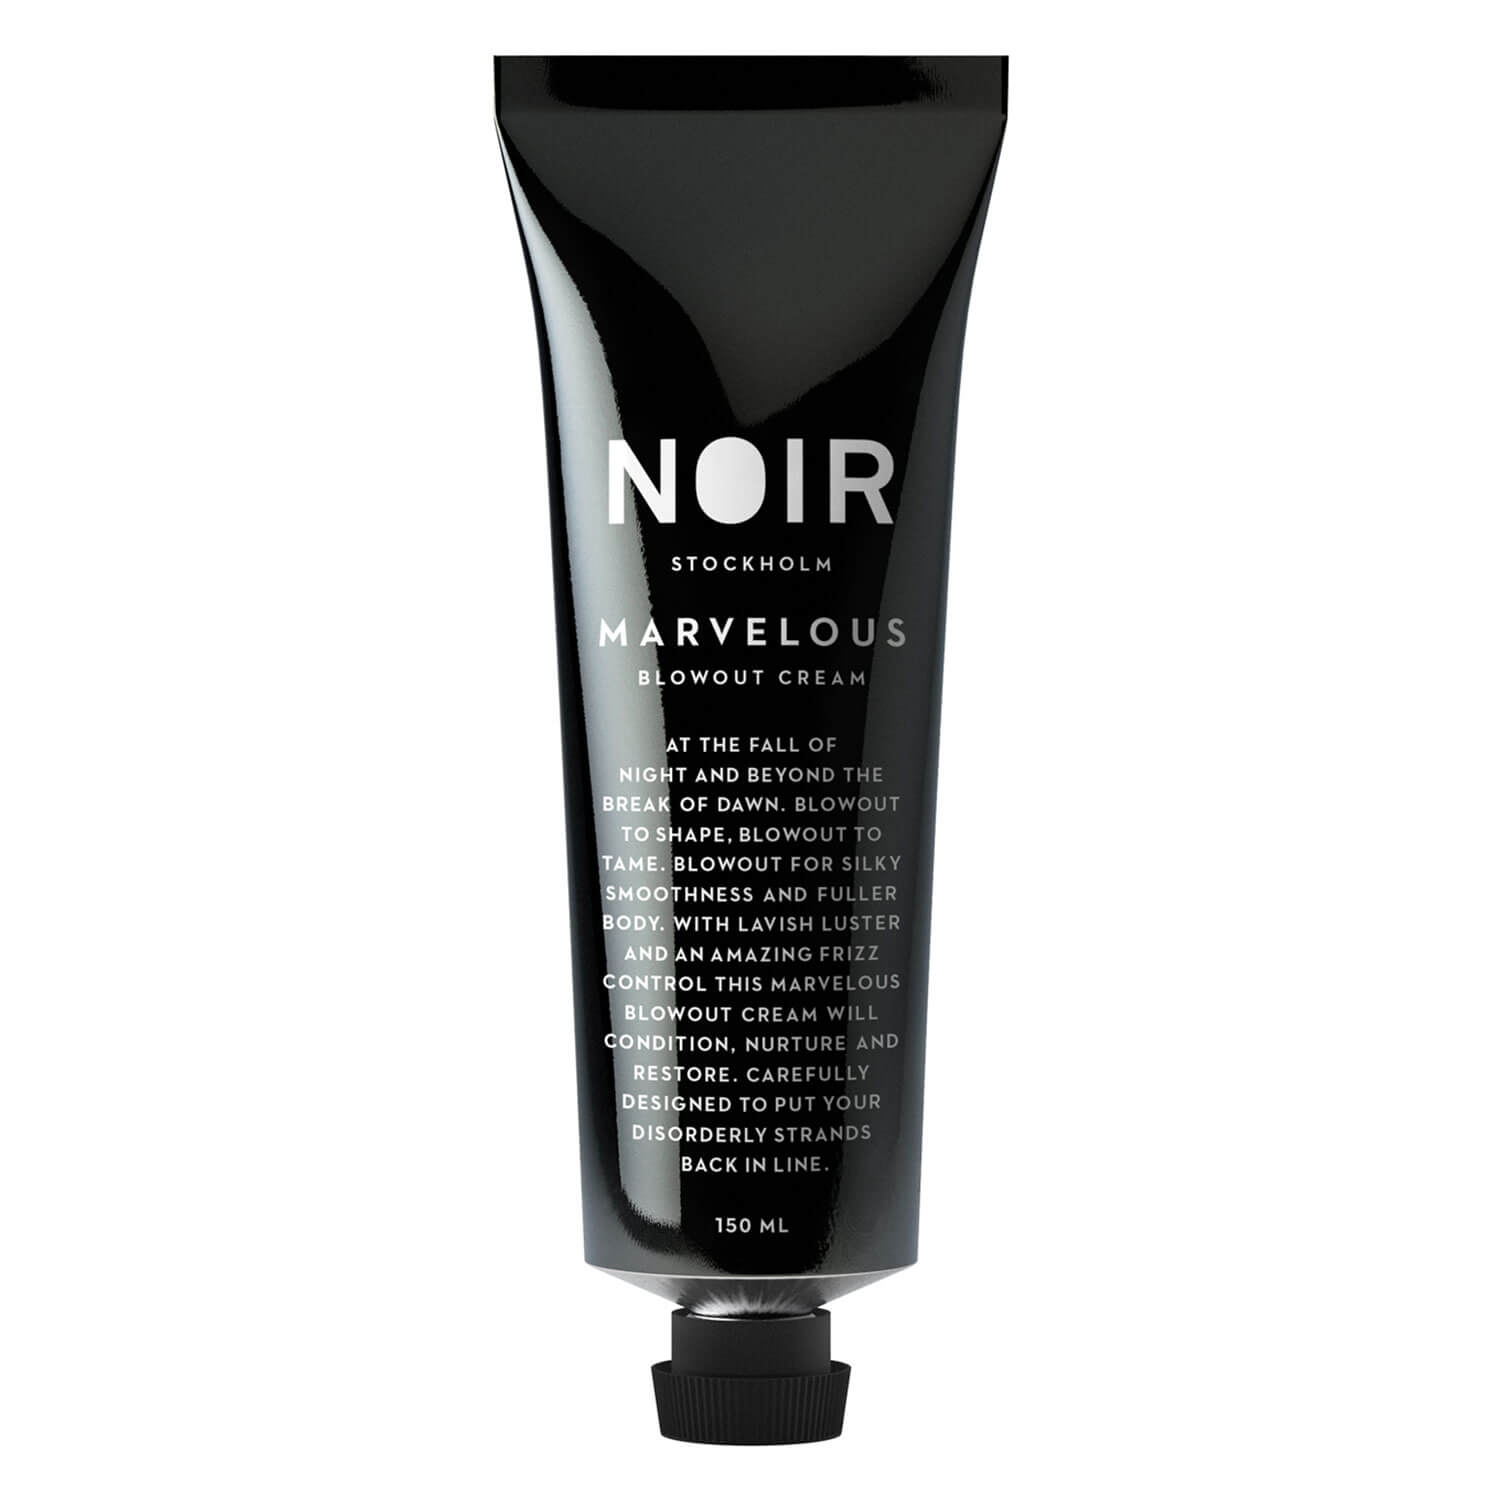 Produktbild von NOIR - Marvelous Blowout Cream